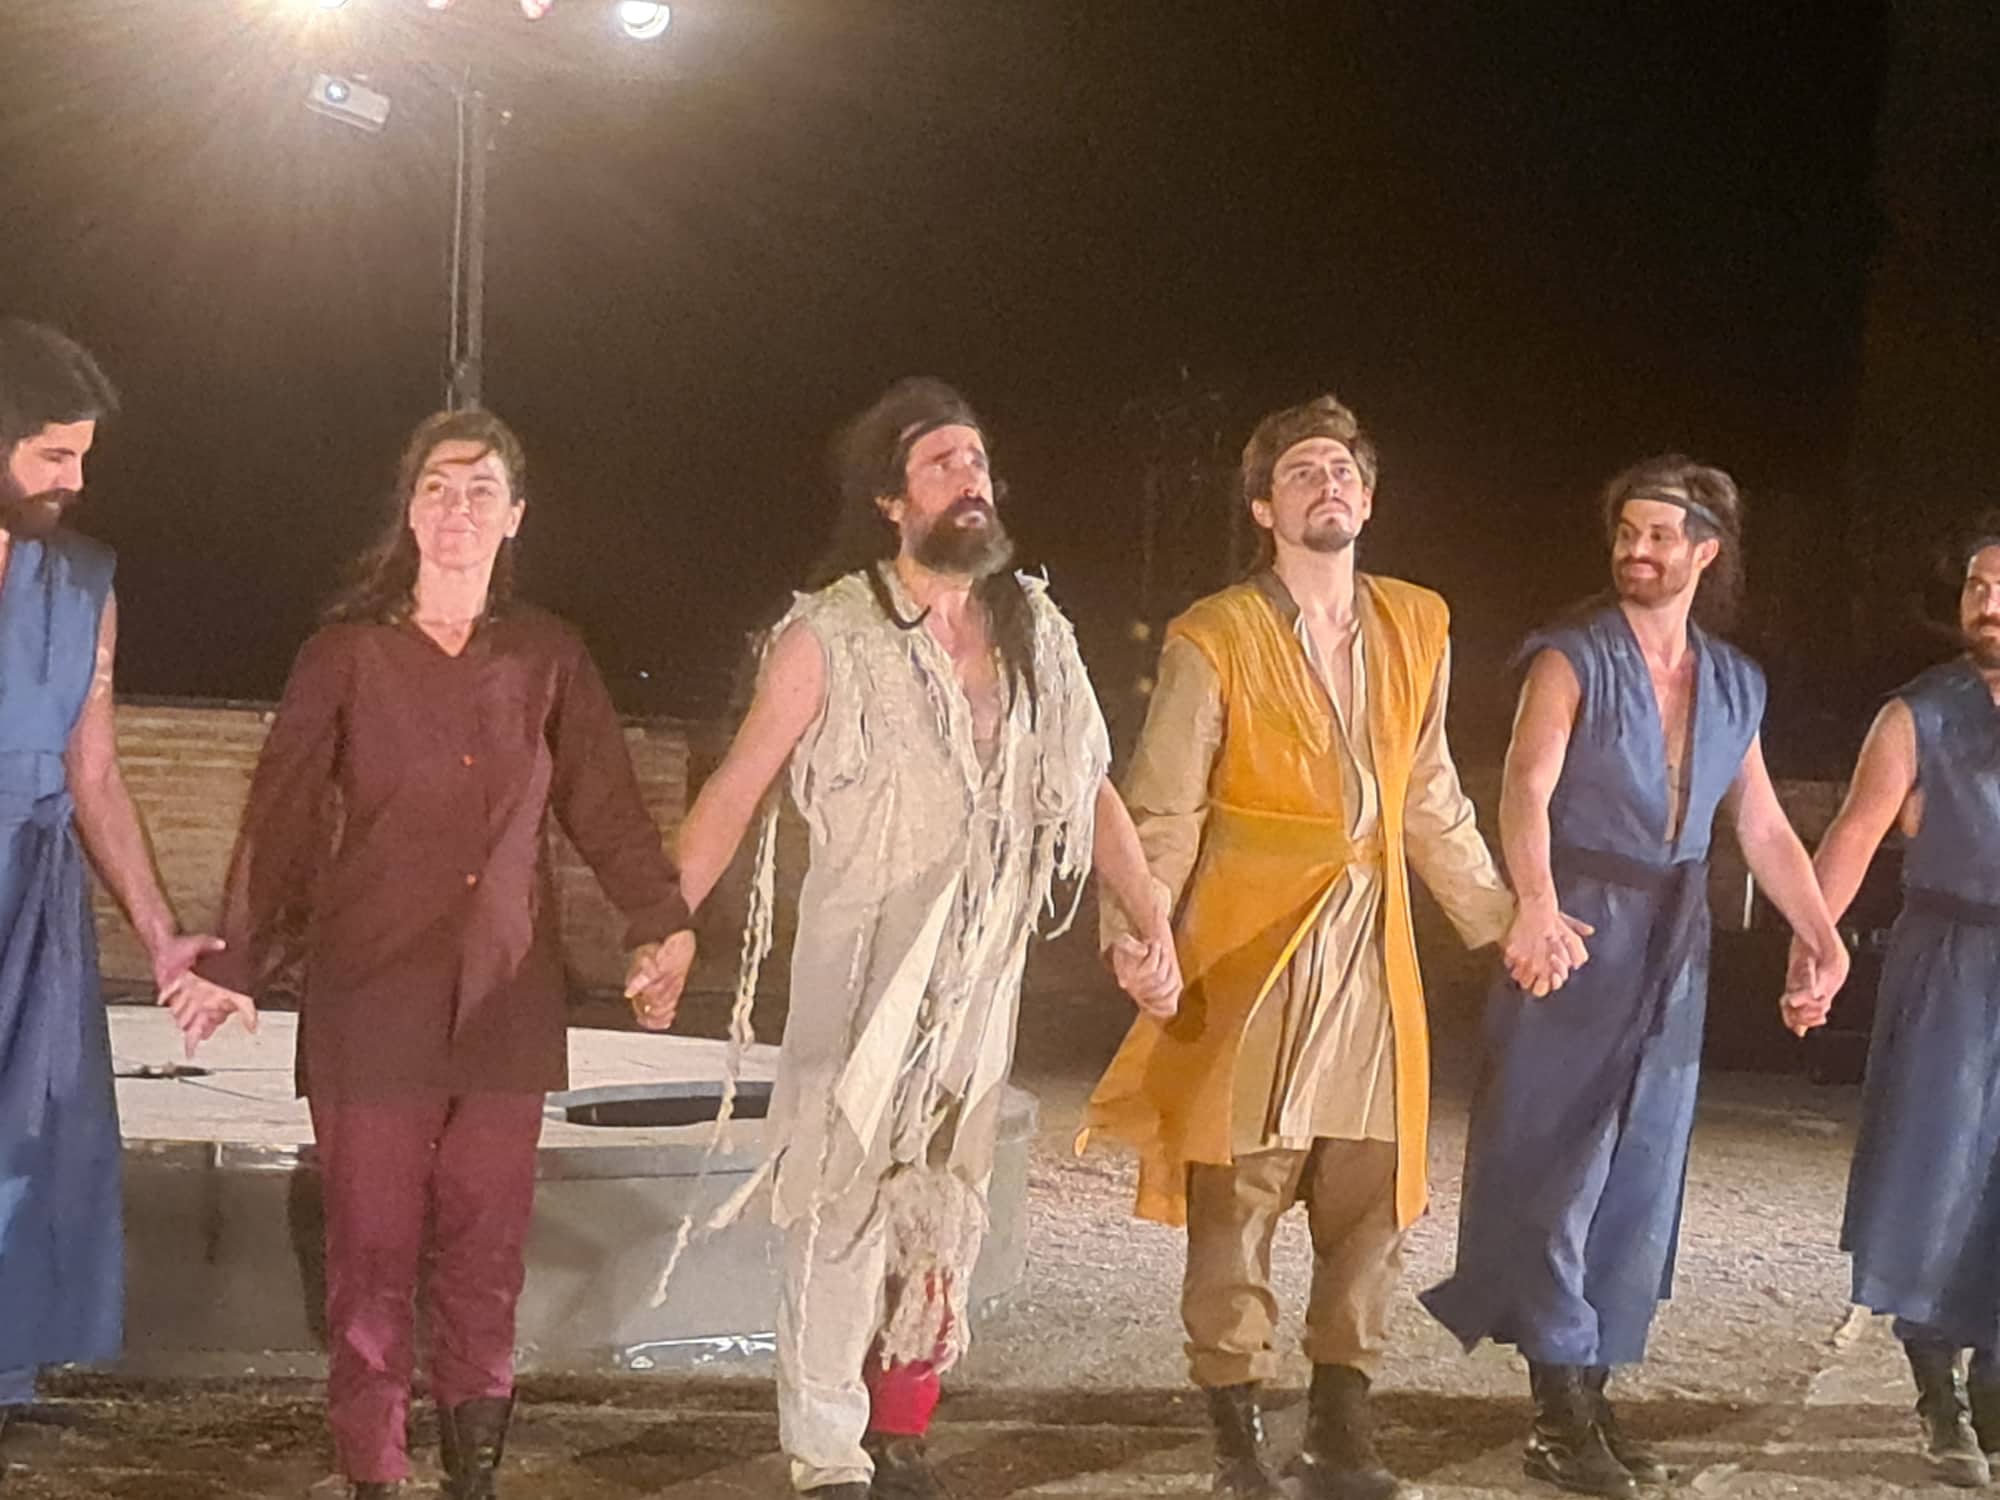 Άργος: Ο «Φιλοκτήτης» της Καμίνσκι με τον θηλυκό Οδυσσέα έφερε κοσμοσυρροή στο Αρχαίο Θέατρο